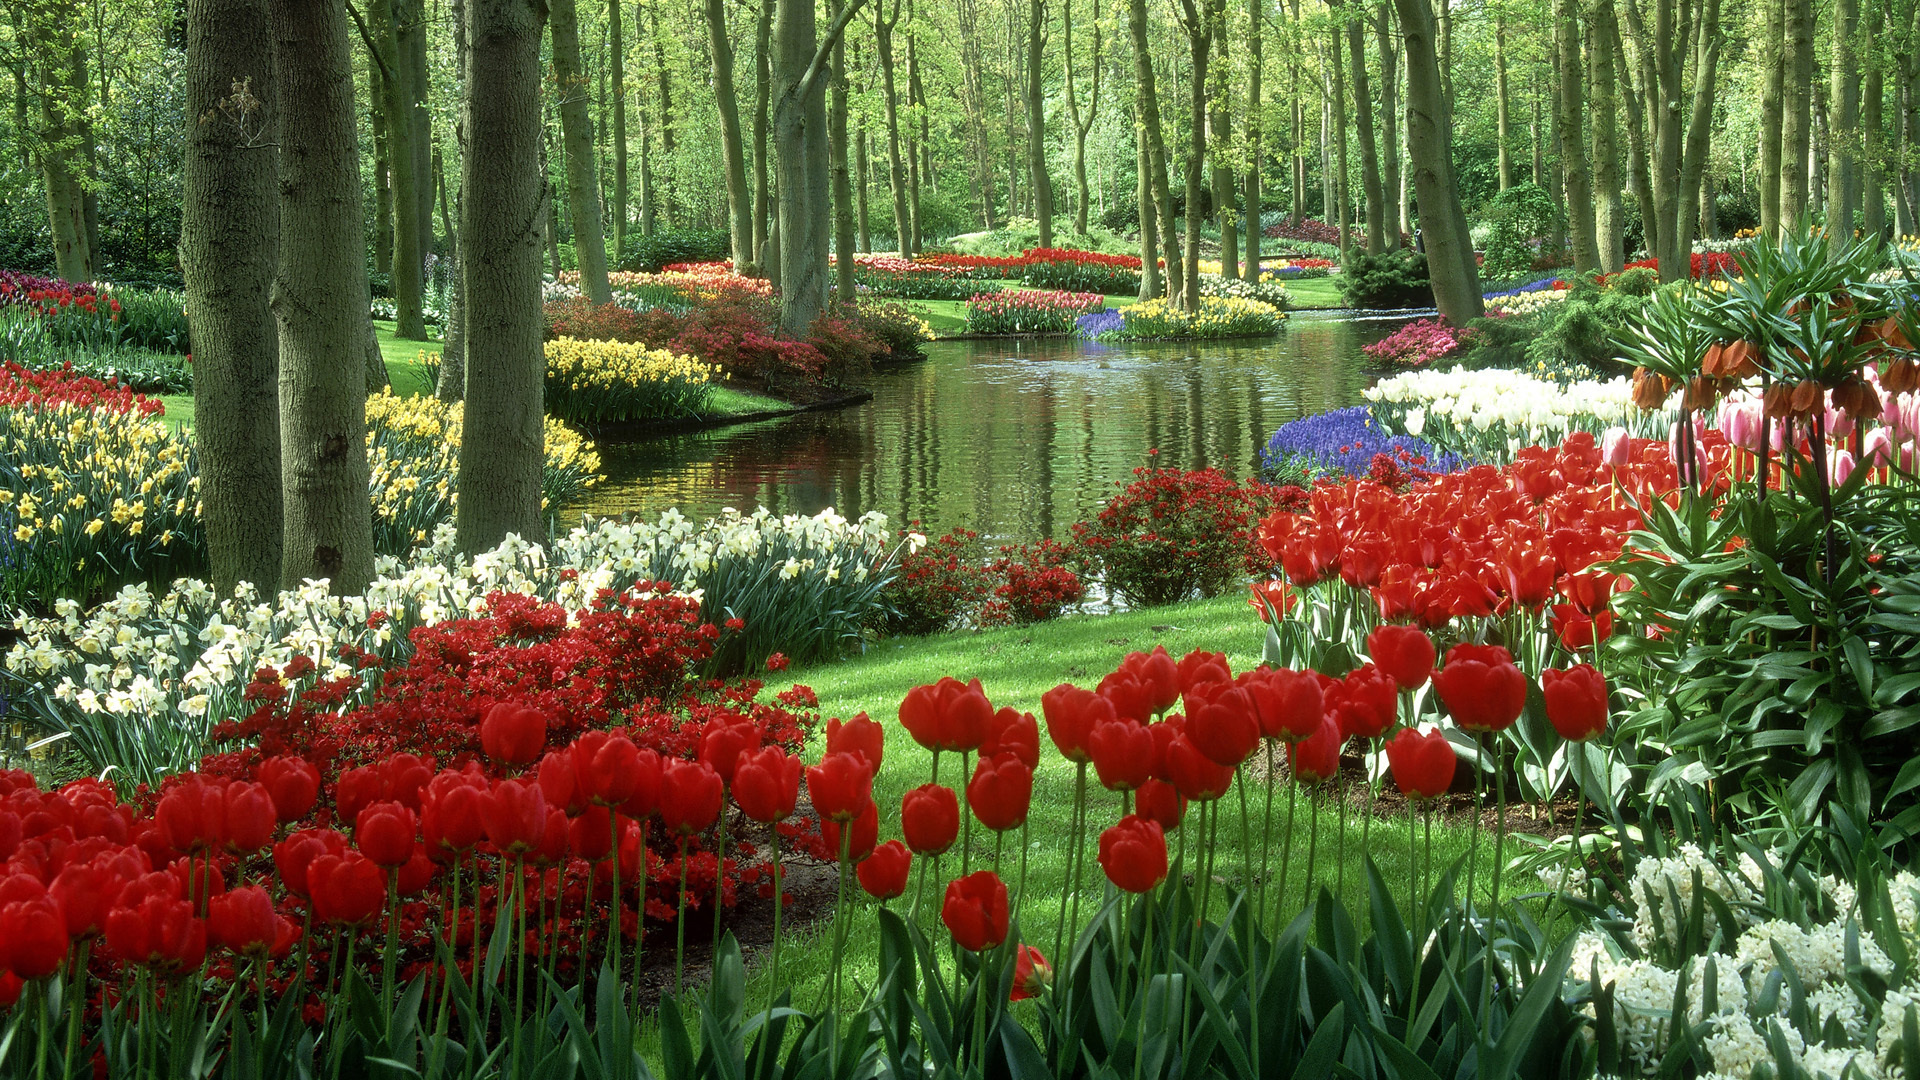 Flower Garden, Springtime splendor, Floral paradise, Blossoming beauty, 1920x1080 Full HD Desktop